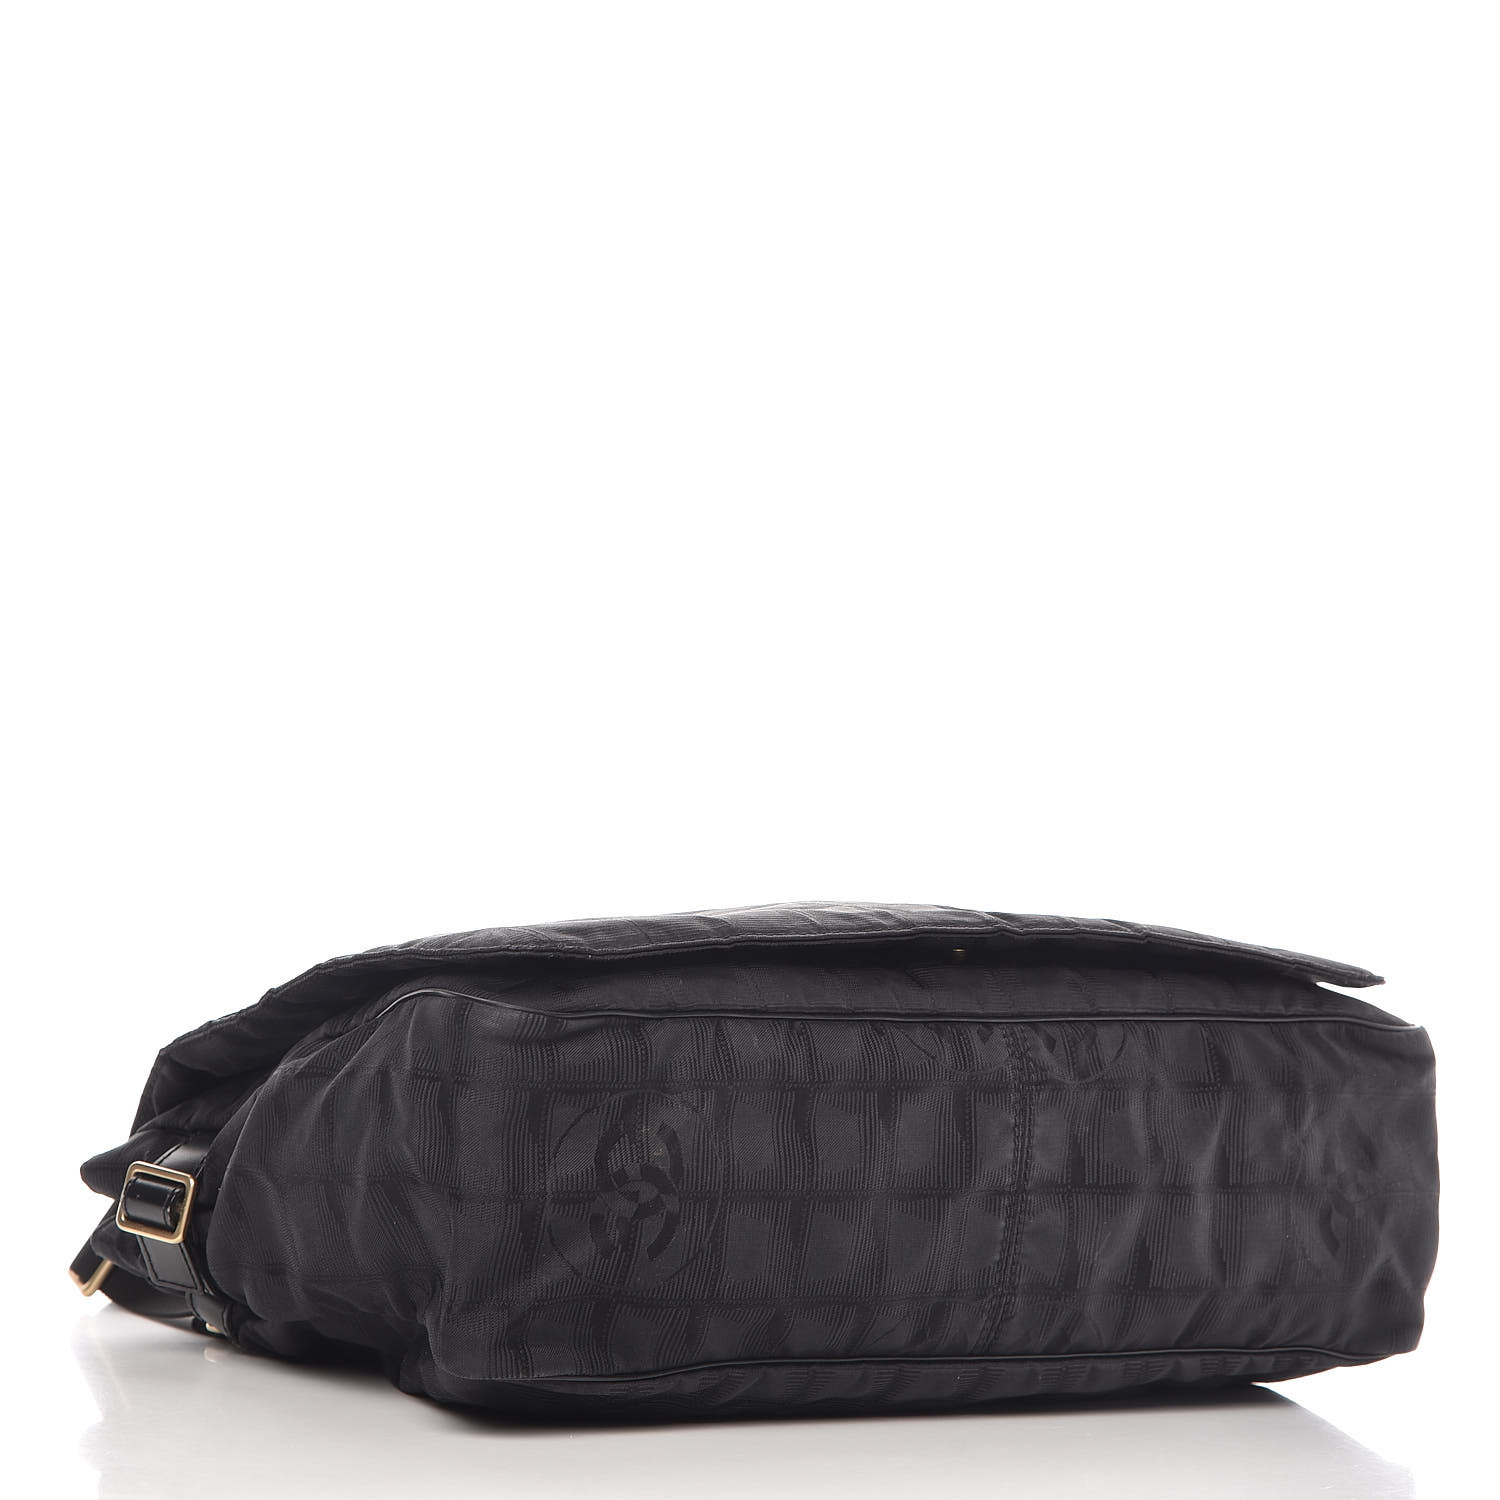 CHANEL Nylon Travel Messenger Bag Black 530097